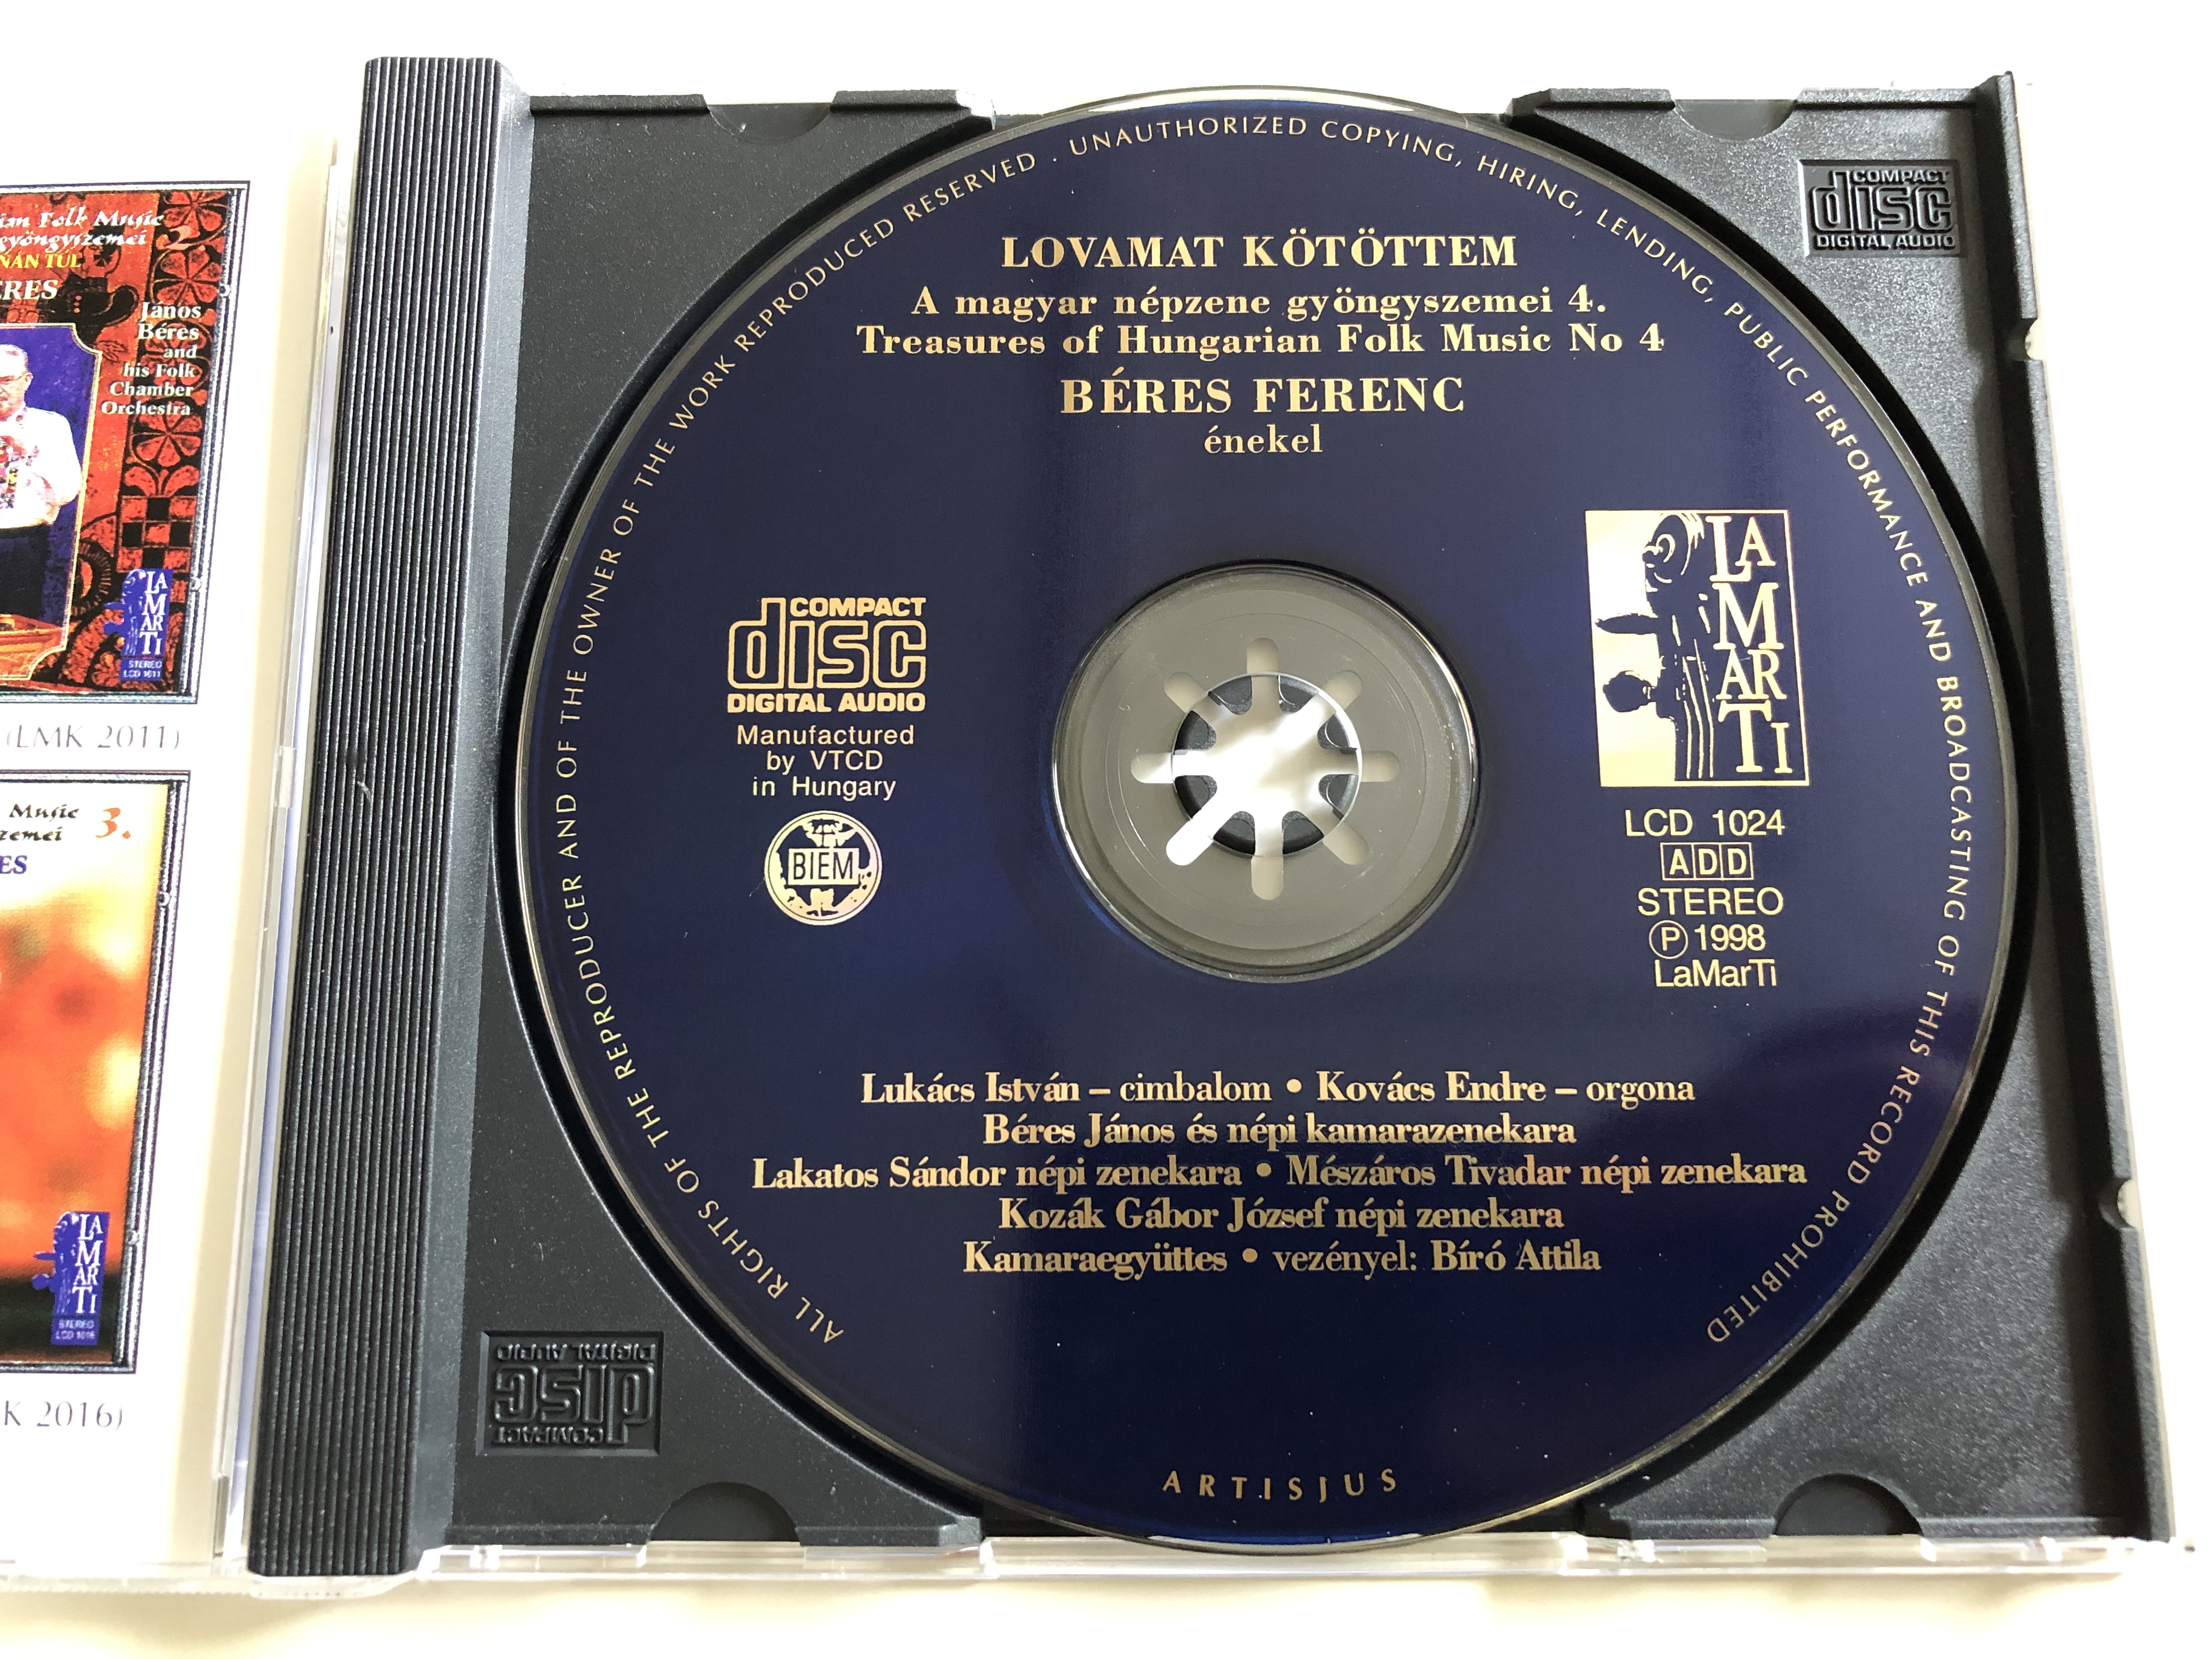 treasures-of-hungarian-folk-music-4.-lovamat-k-t-ttem-b-res-ferenc-nekel-audio-cd-1998-lamarti-lcd-1024-6-.jpg